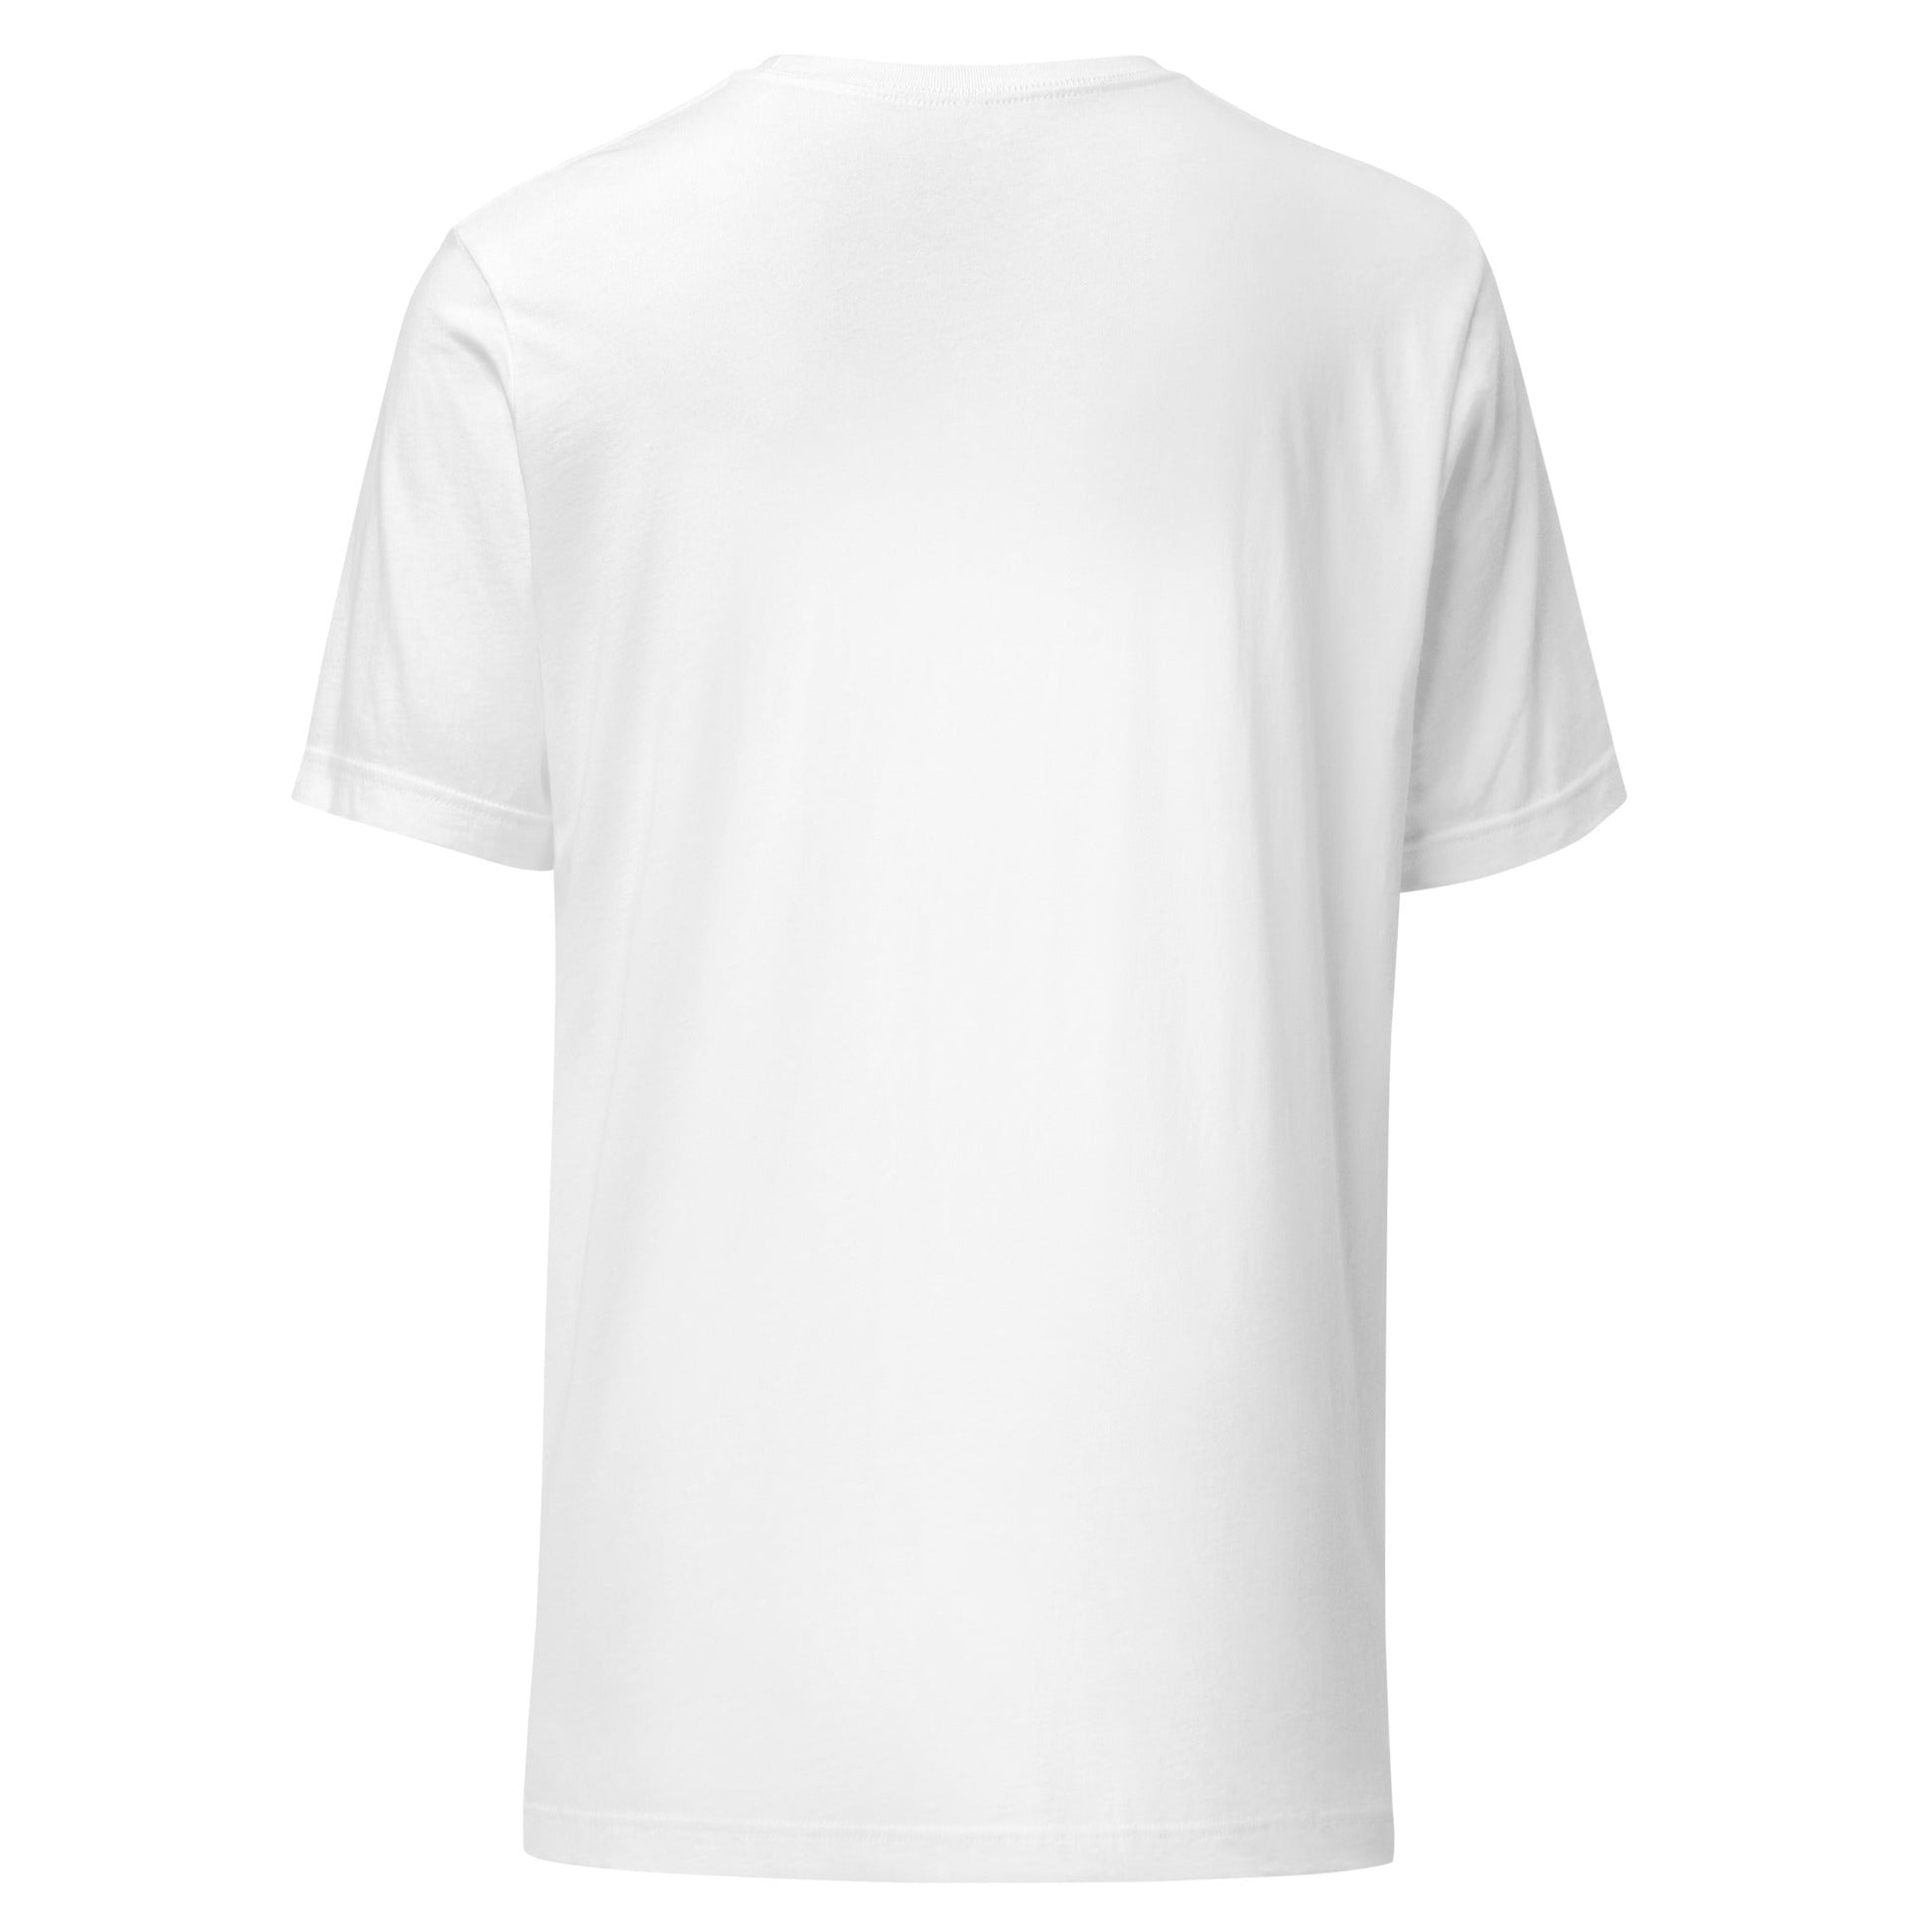 Camiseta Blanca de Algodón Pack 6 - Elegancia y calidad en nuestra insignia. Descubre la perfección del algodón premium importado. Paquete de 6